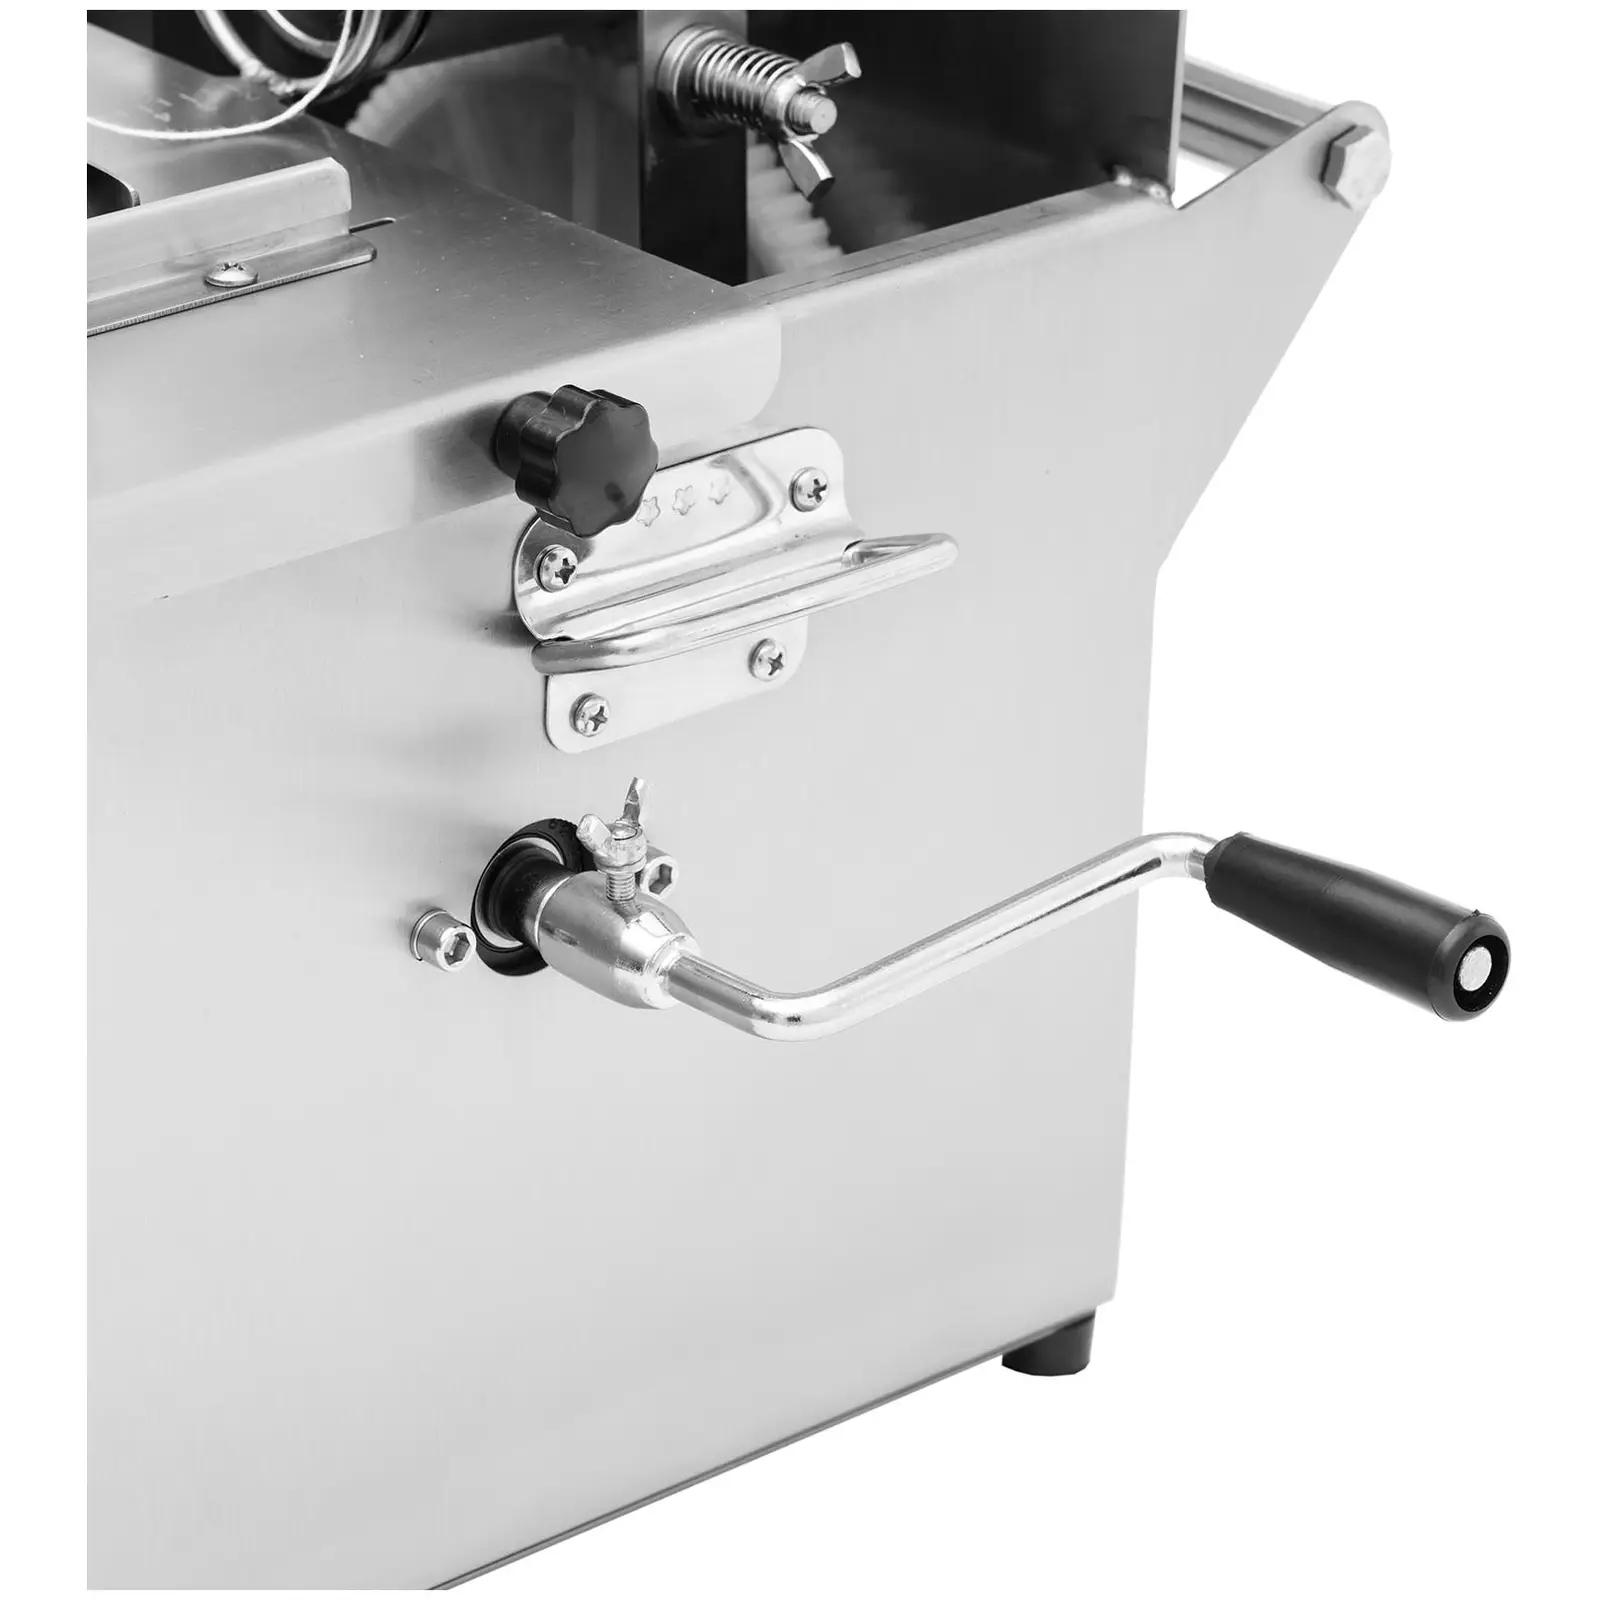 Máquina de atar salsichas - manual - aço inoxidável - 6 carretéis de fio de salsicha - Royal Catering